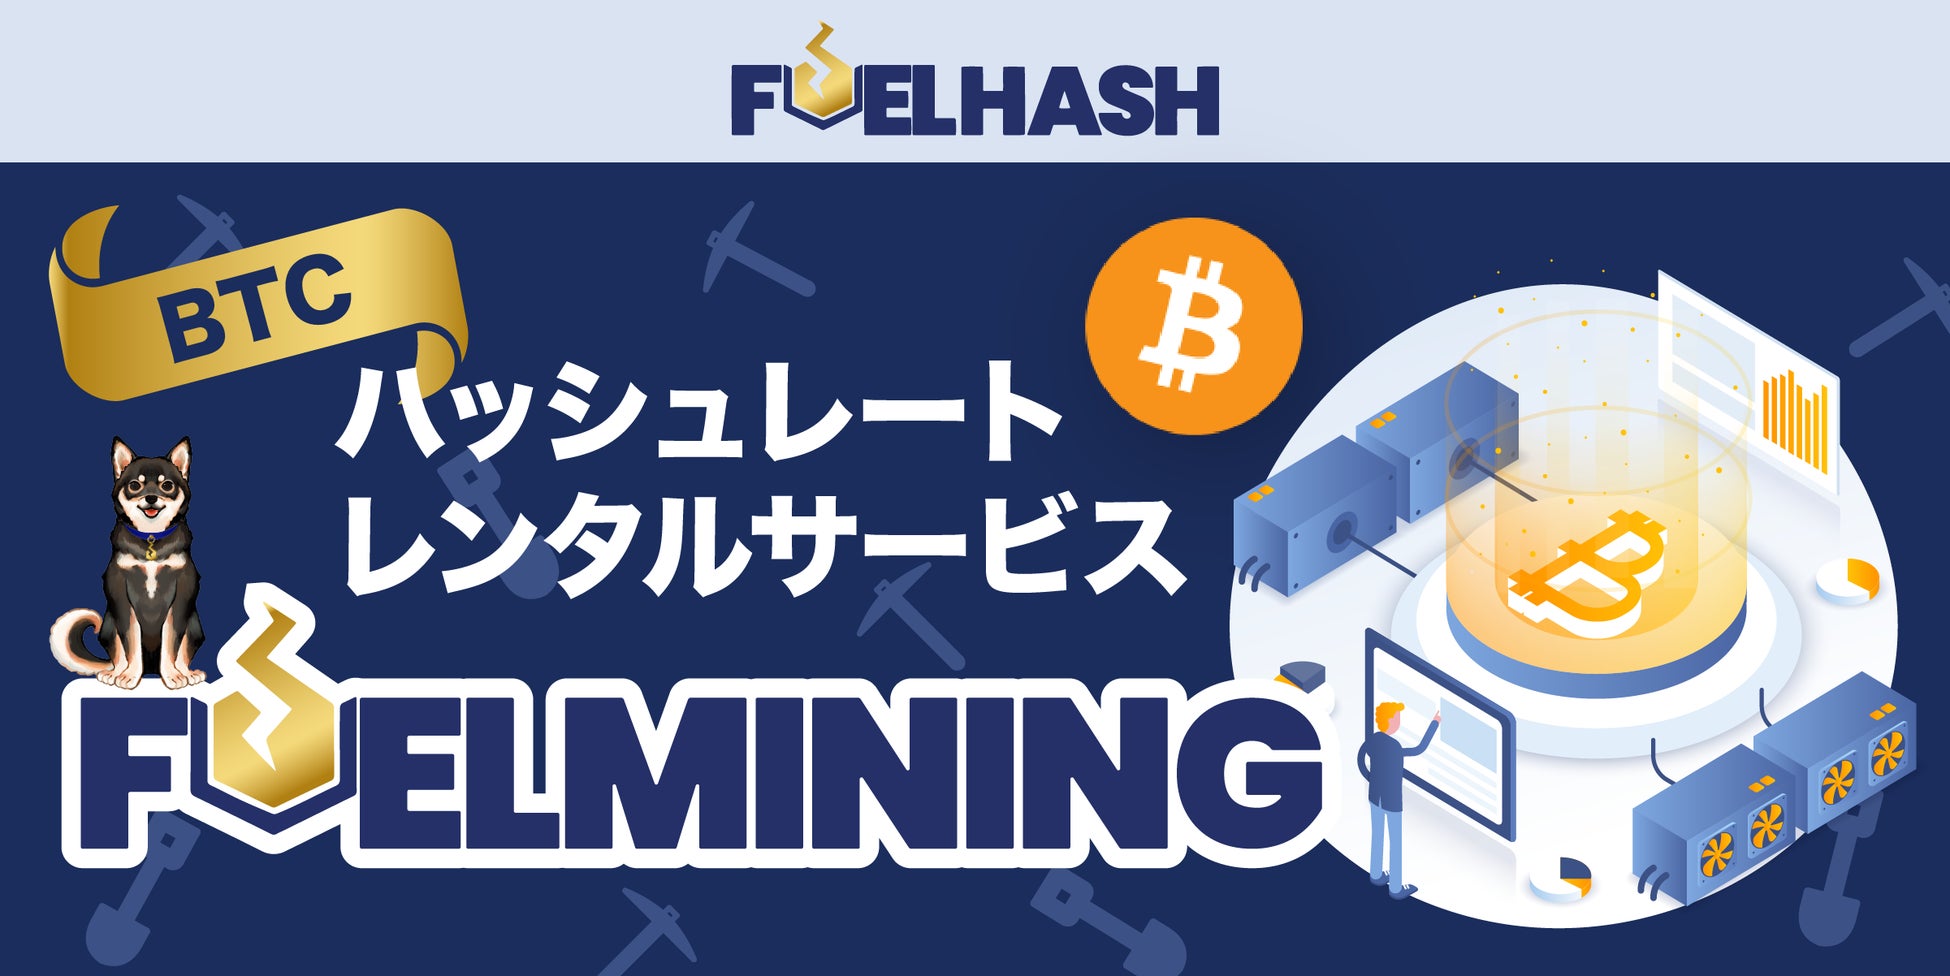 FUELHASH、ビットコイン・ハッシュレートレンタルサービス「FUELMINING」第5回販売開始